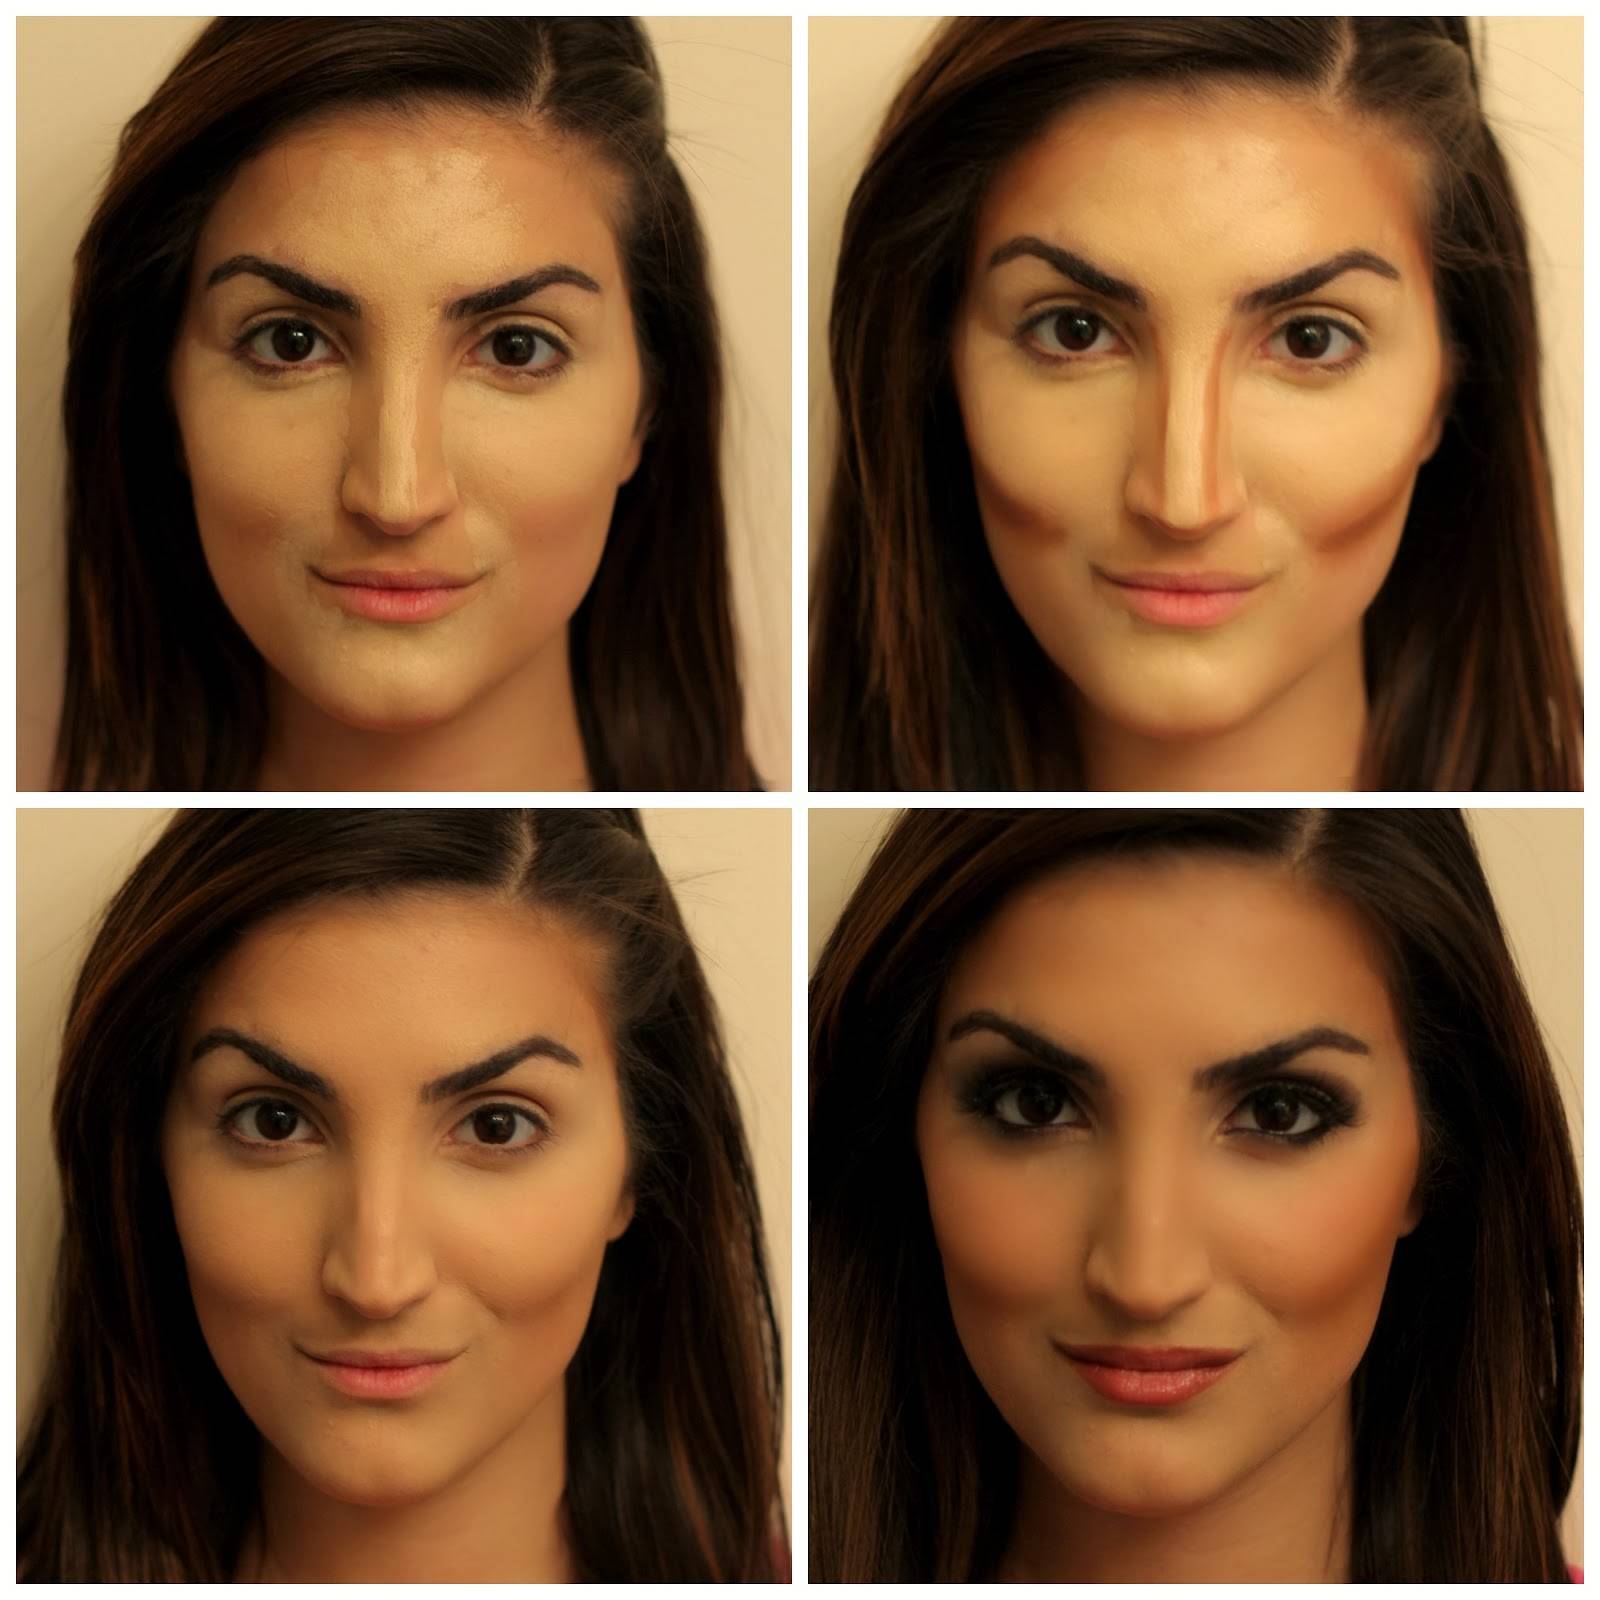 Коррекция лица макияжем - глаза, губы и нос | портал для женщин womanchoice.net